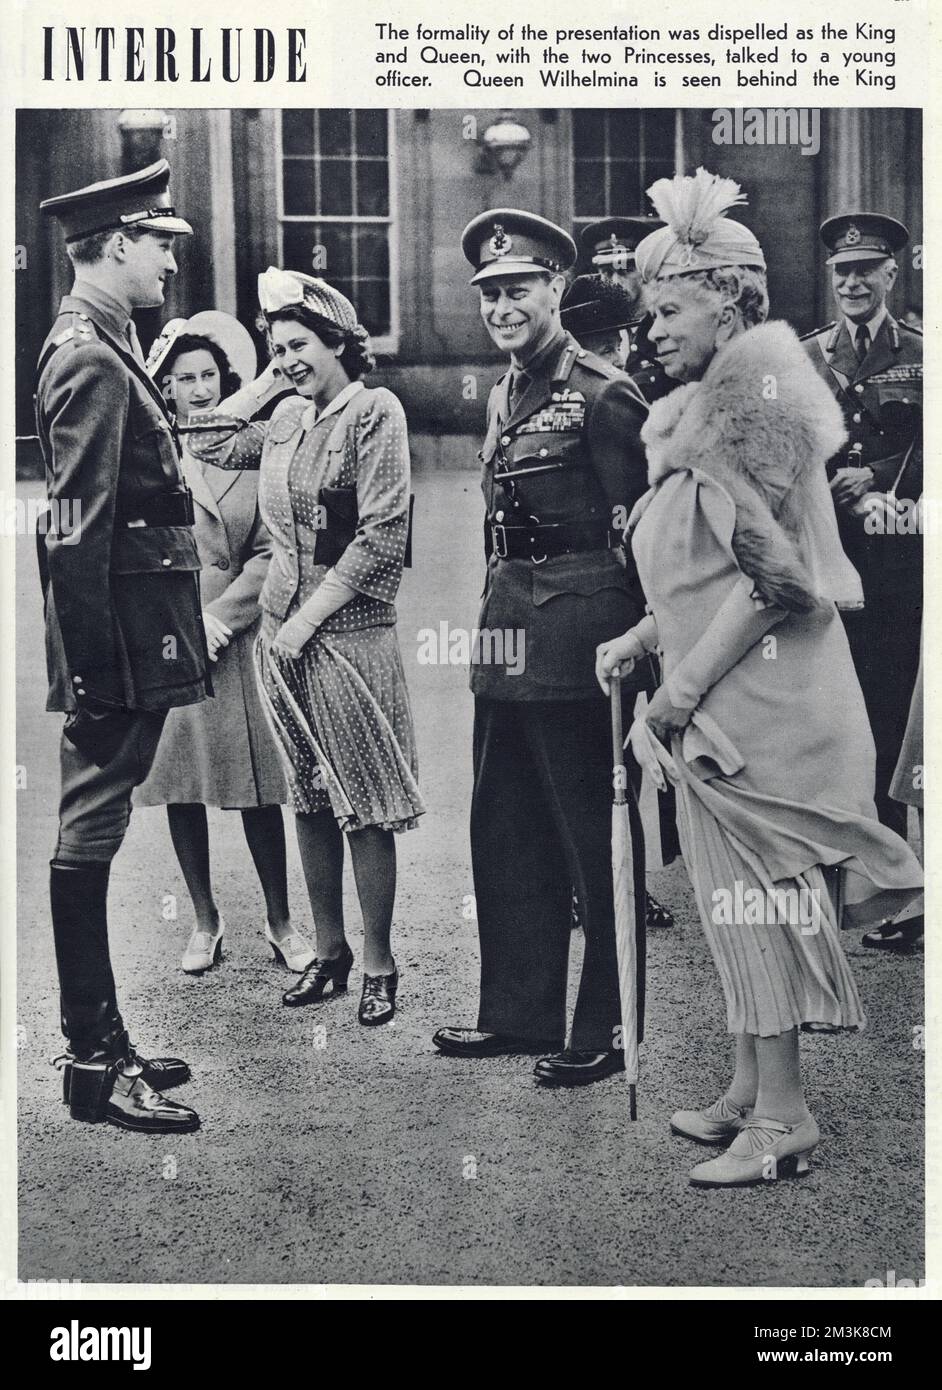 König George VI. Mit den Prinzessinnen Elizabeth und Margaret und Queen Mary bei einem Besuch von Königin Wilhelmina von Holland. Königin Wilhelmina ist hinter dem König im Quadrangle des Buckingham-Palastes zu sehen, wo sie ihm 36 Pferde als Geschenk der niederländischen Regierung überreichte. Datum: 1946 Stockfoto